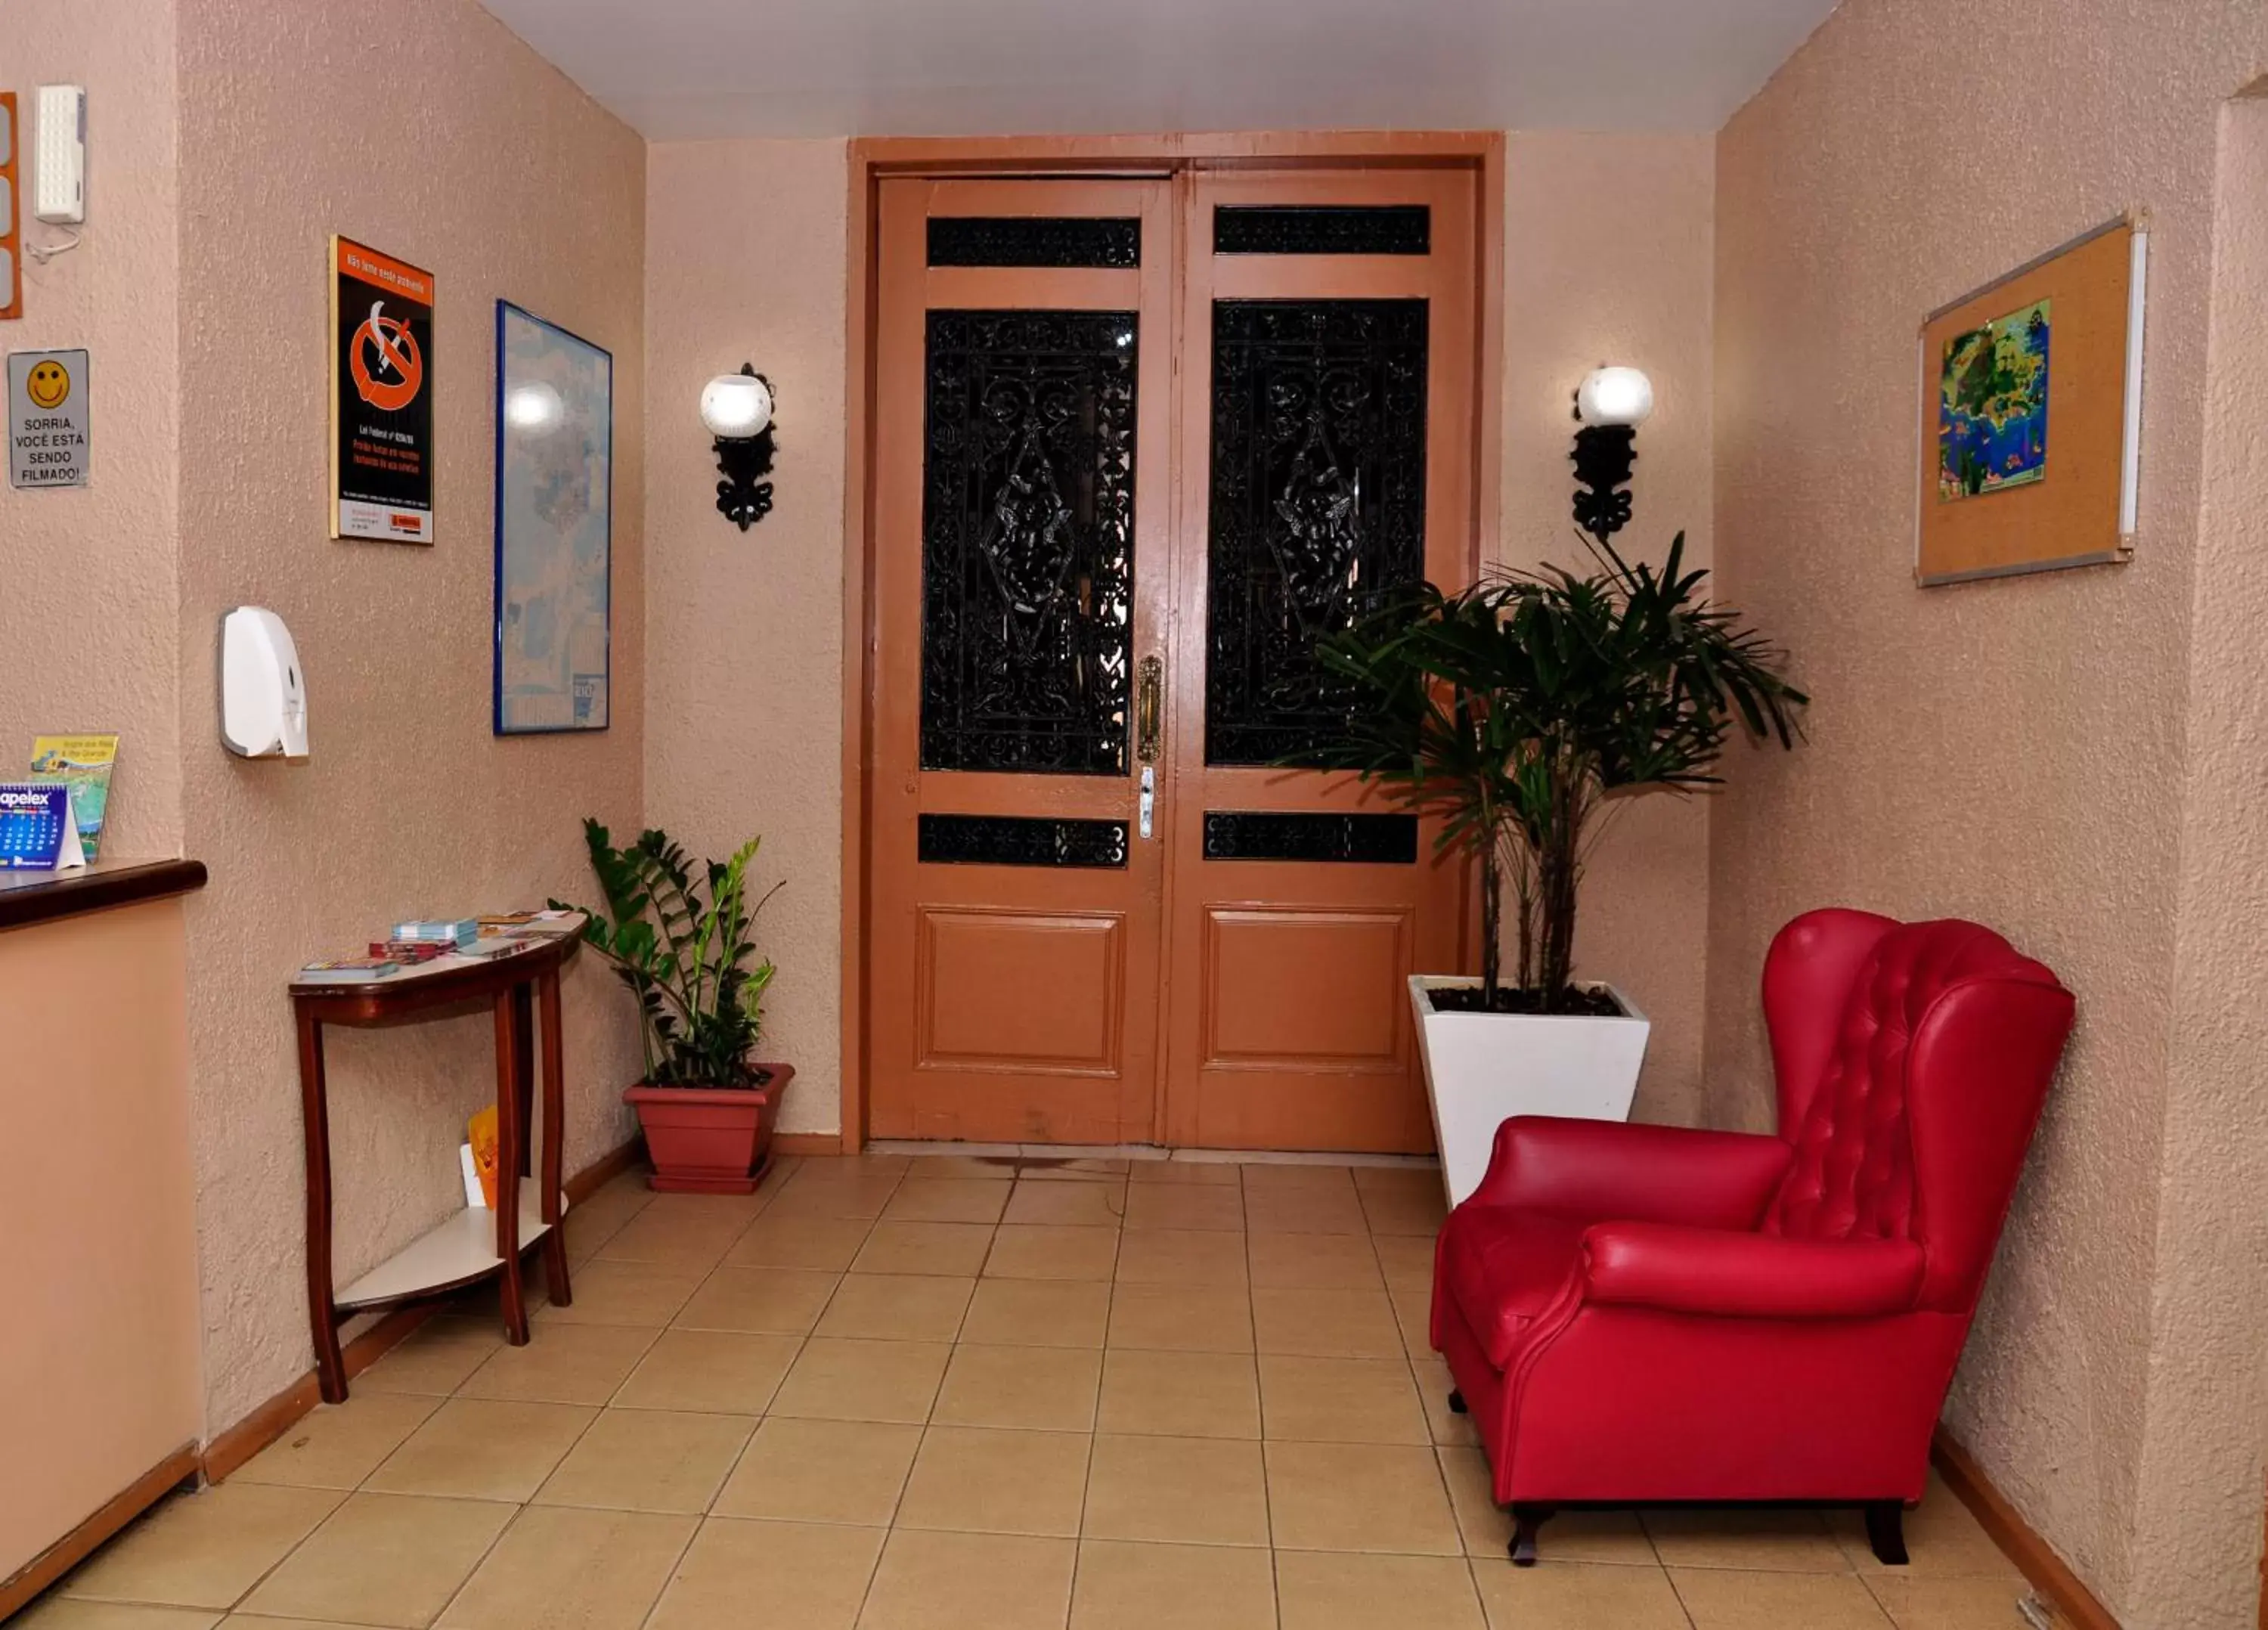 Lobby or reception, Lobby/Reception in Hotel Plaza Riazor